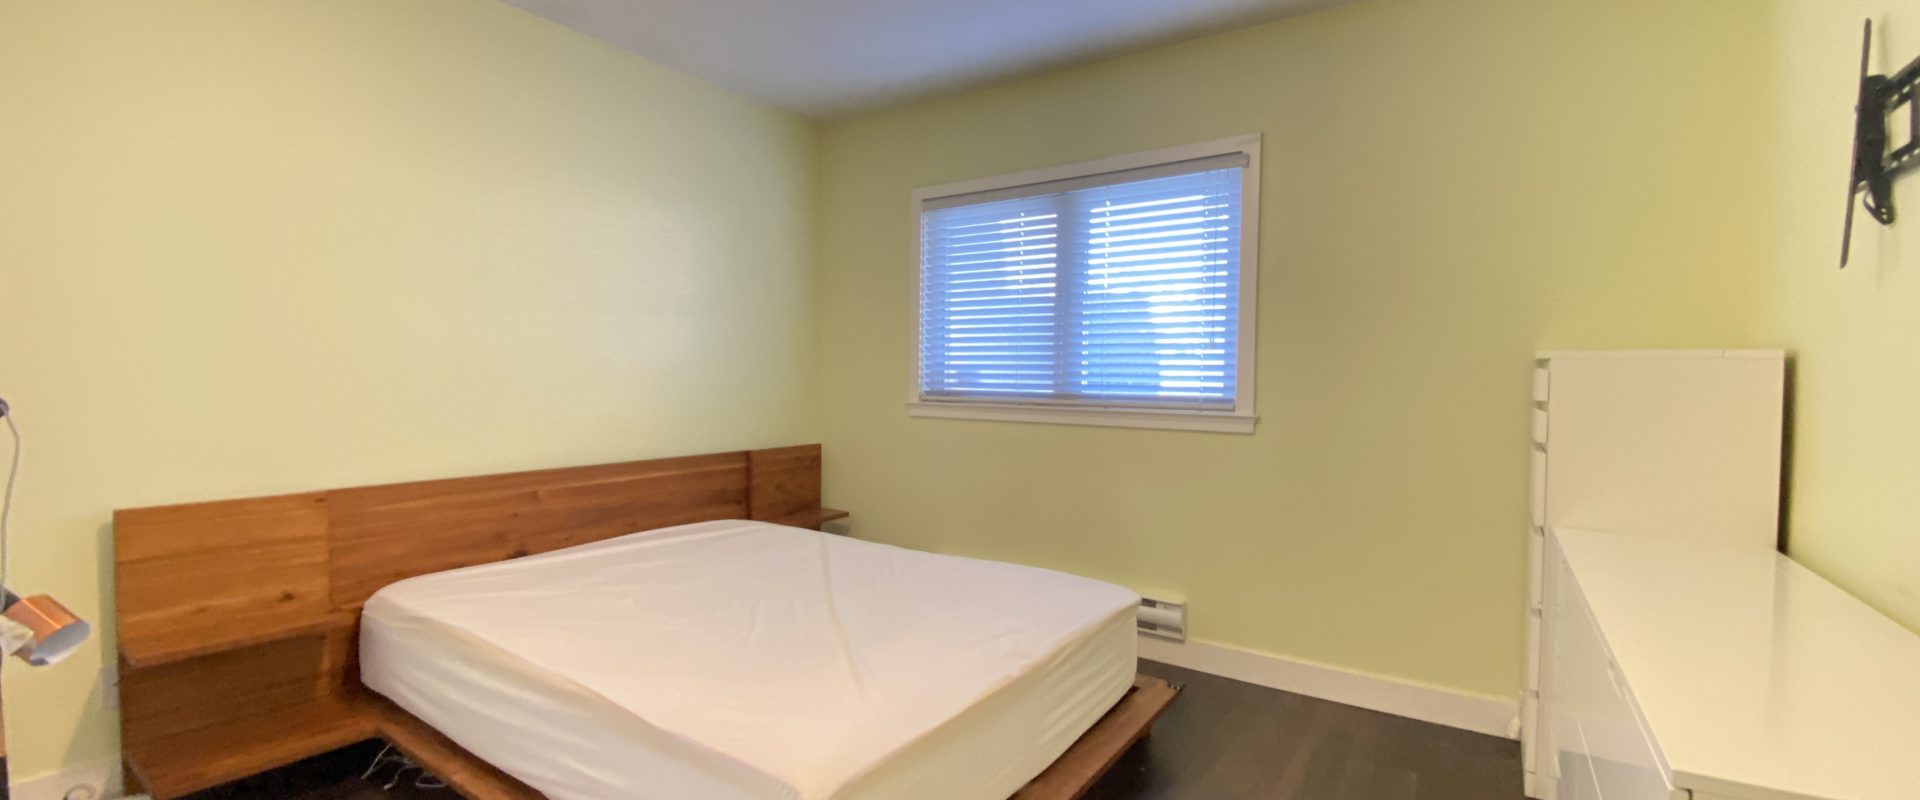 Vancouver Renfrew Collingwood Upper Level 2 Bedroom plus Den for Rent